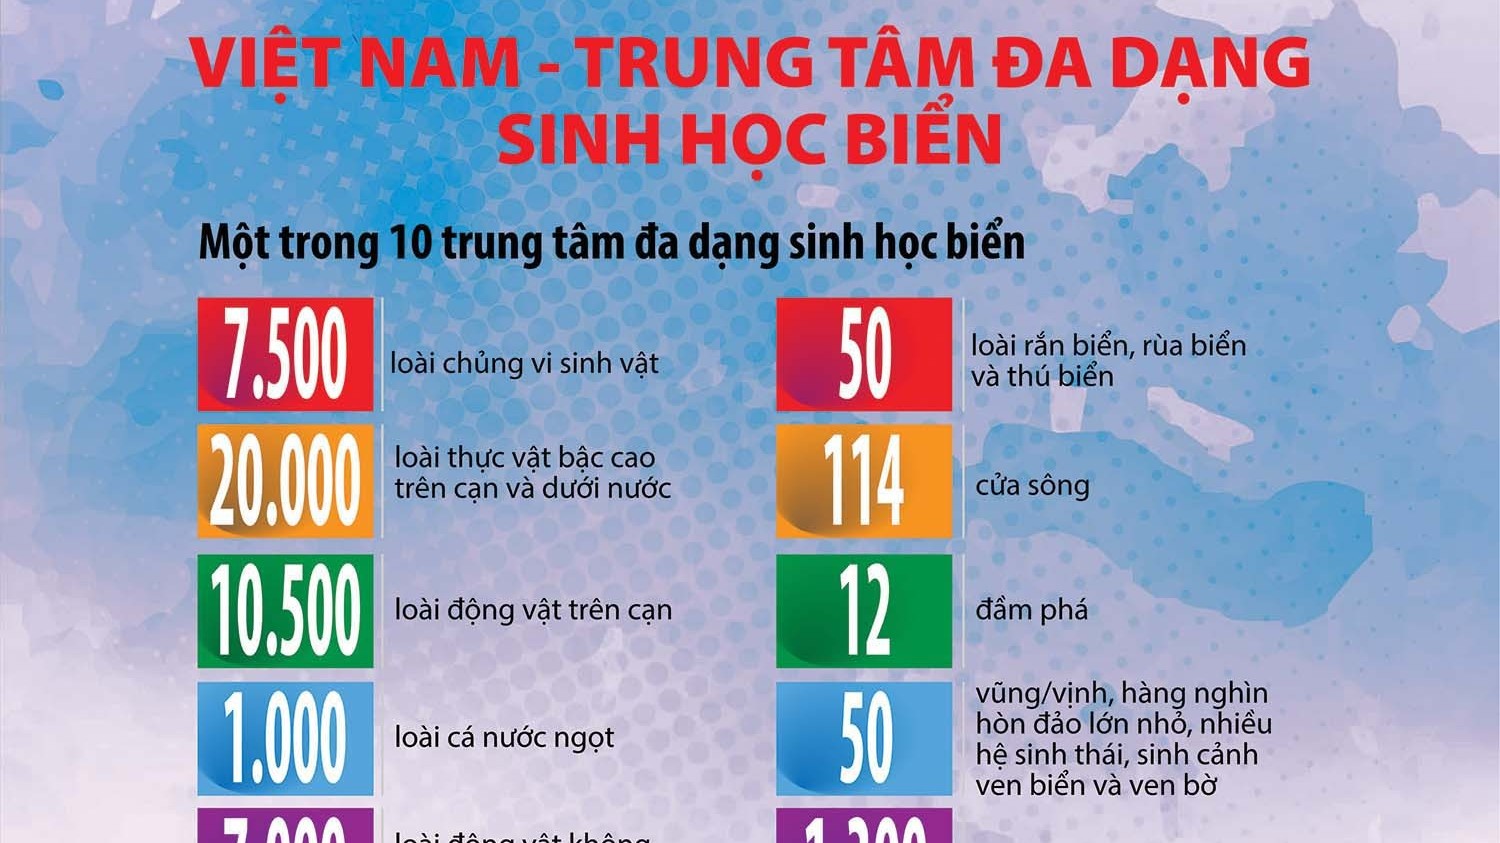 Việt Nam - trung tâm đa dạng sinh học biển